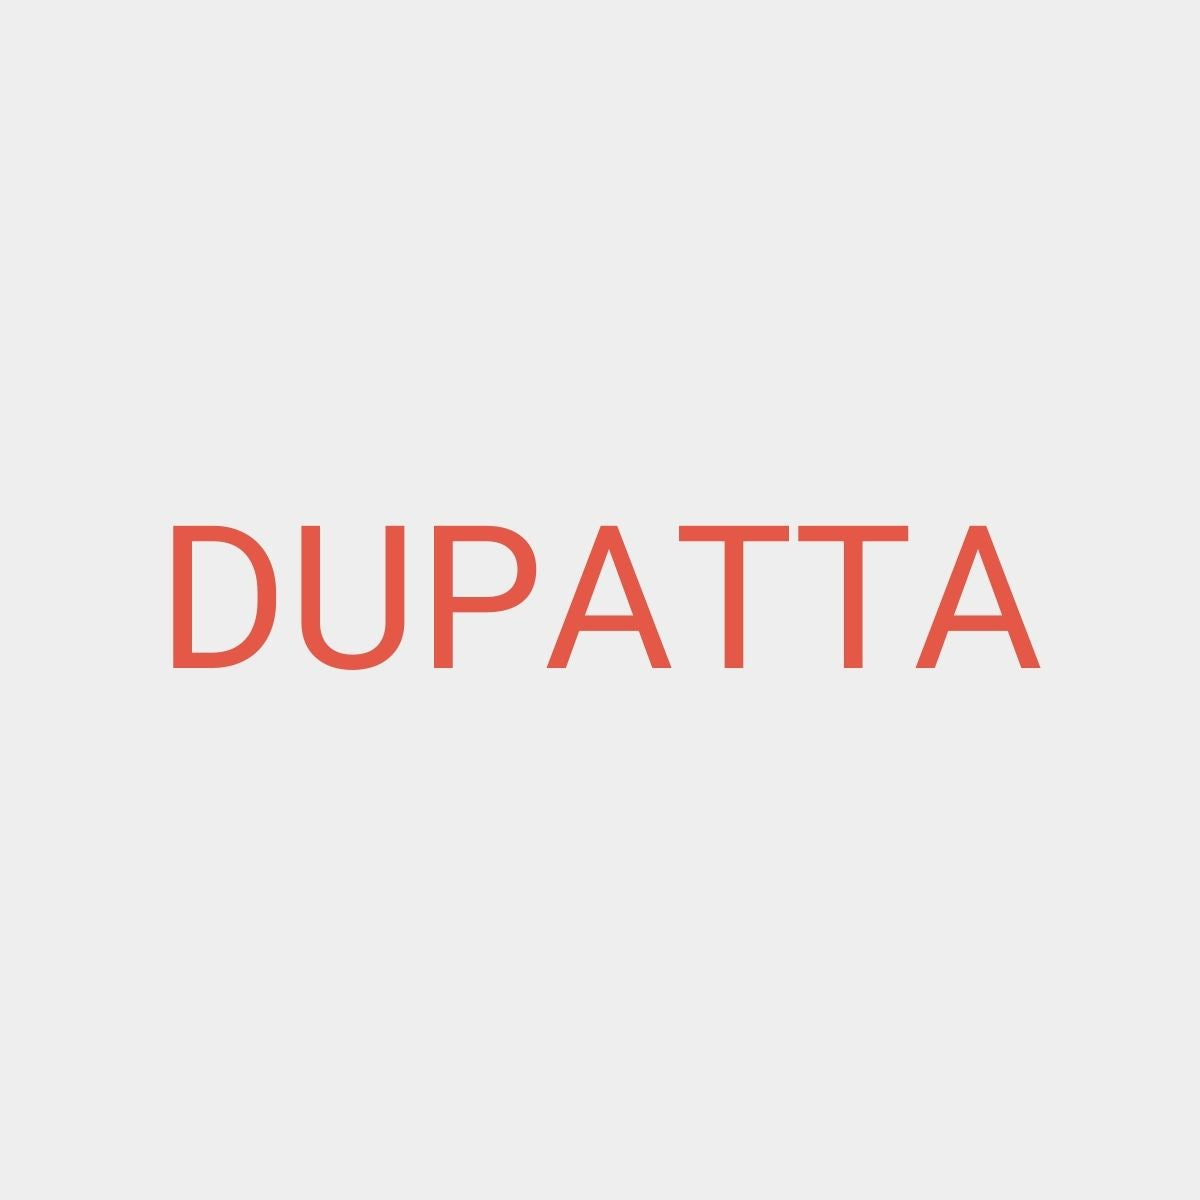 Additional Dupatta